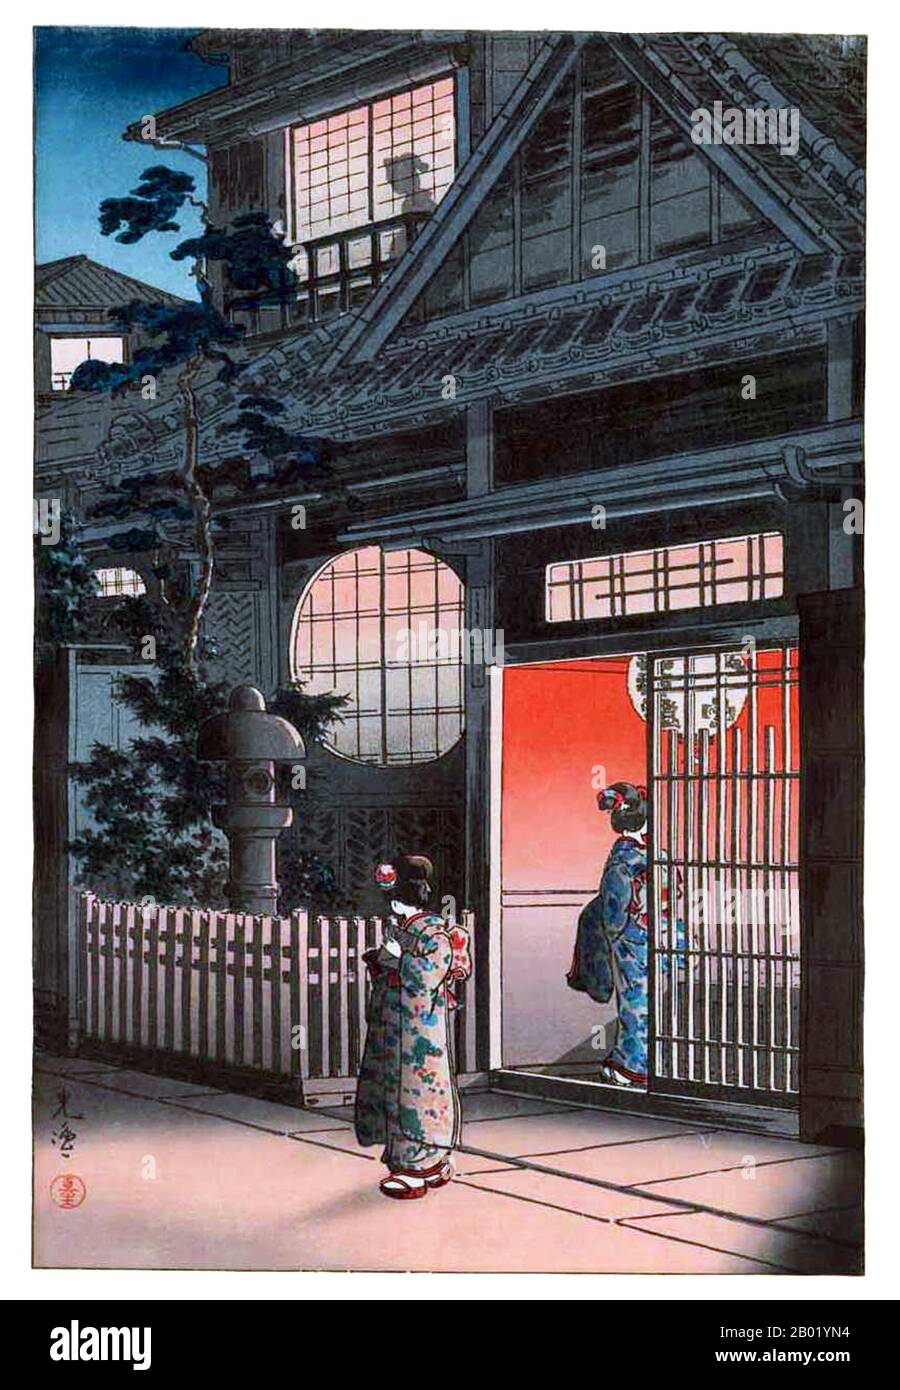 Tsuchiya Koitsu war Künstler der Shin Hanga-Bewegung. Shin hanga ("neue Drucke") war eine Kunstbewegung im Japan des frühen 20. Jahrhunderts in der Taishō- und Shōwa-Zeit, die die traditionelle ukiyo-e-Kunst, die in der Edo- und Meiji-Zeit (17. Bis 19. Jahrhundert) verwurzelt war, revitalisierte. Die Bewegung florierte von etwa von 1915 bis 1942, obwohl sie von 1946 bis in die 1950er Jahre kurzzeitig wieder aufgenommen wurde. Inspiriert vom europäischen Impressionismus haben die Künstler westliche Elemente wie die Auswirkungen des Lichts und den Ausdruck individueller Stimmungen integriert, konzentrierten sich aber auf streng traditionelle Themen der Landschaften (fukeiga), berühmter Ort Stockfoto